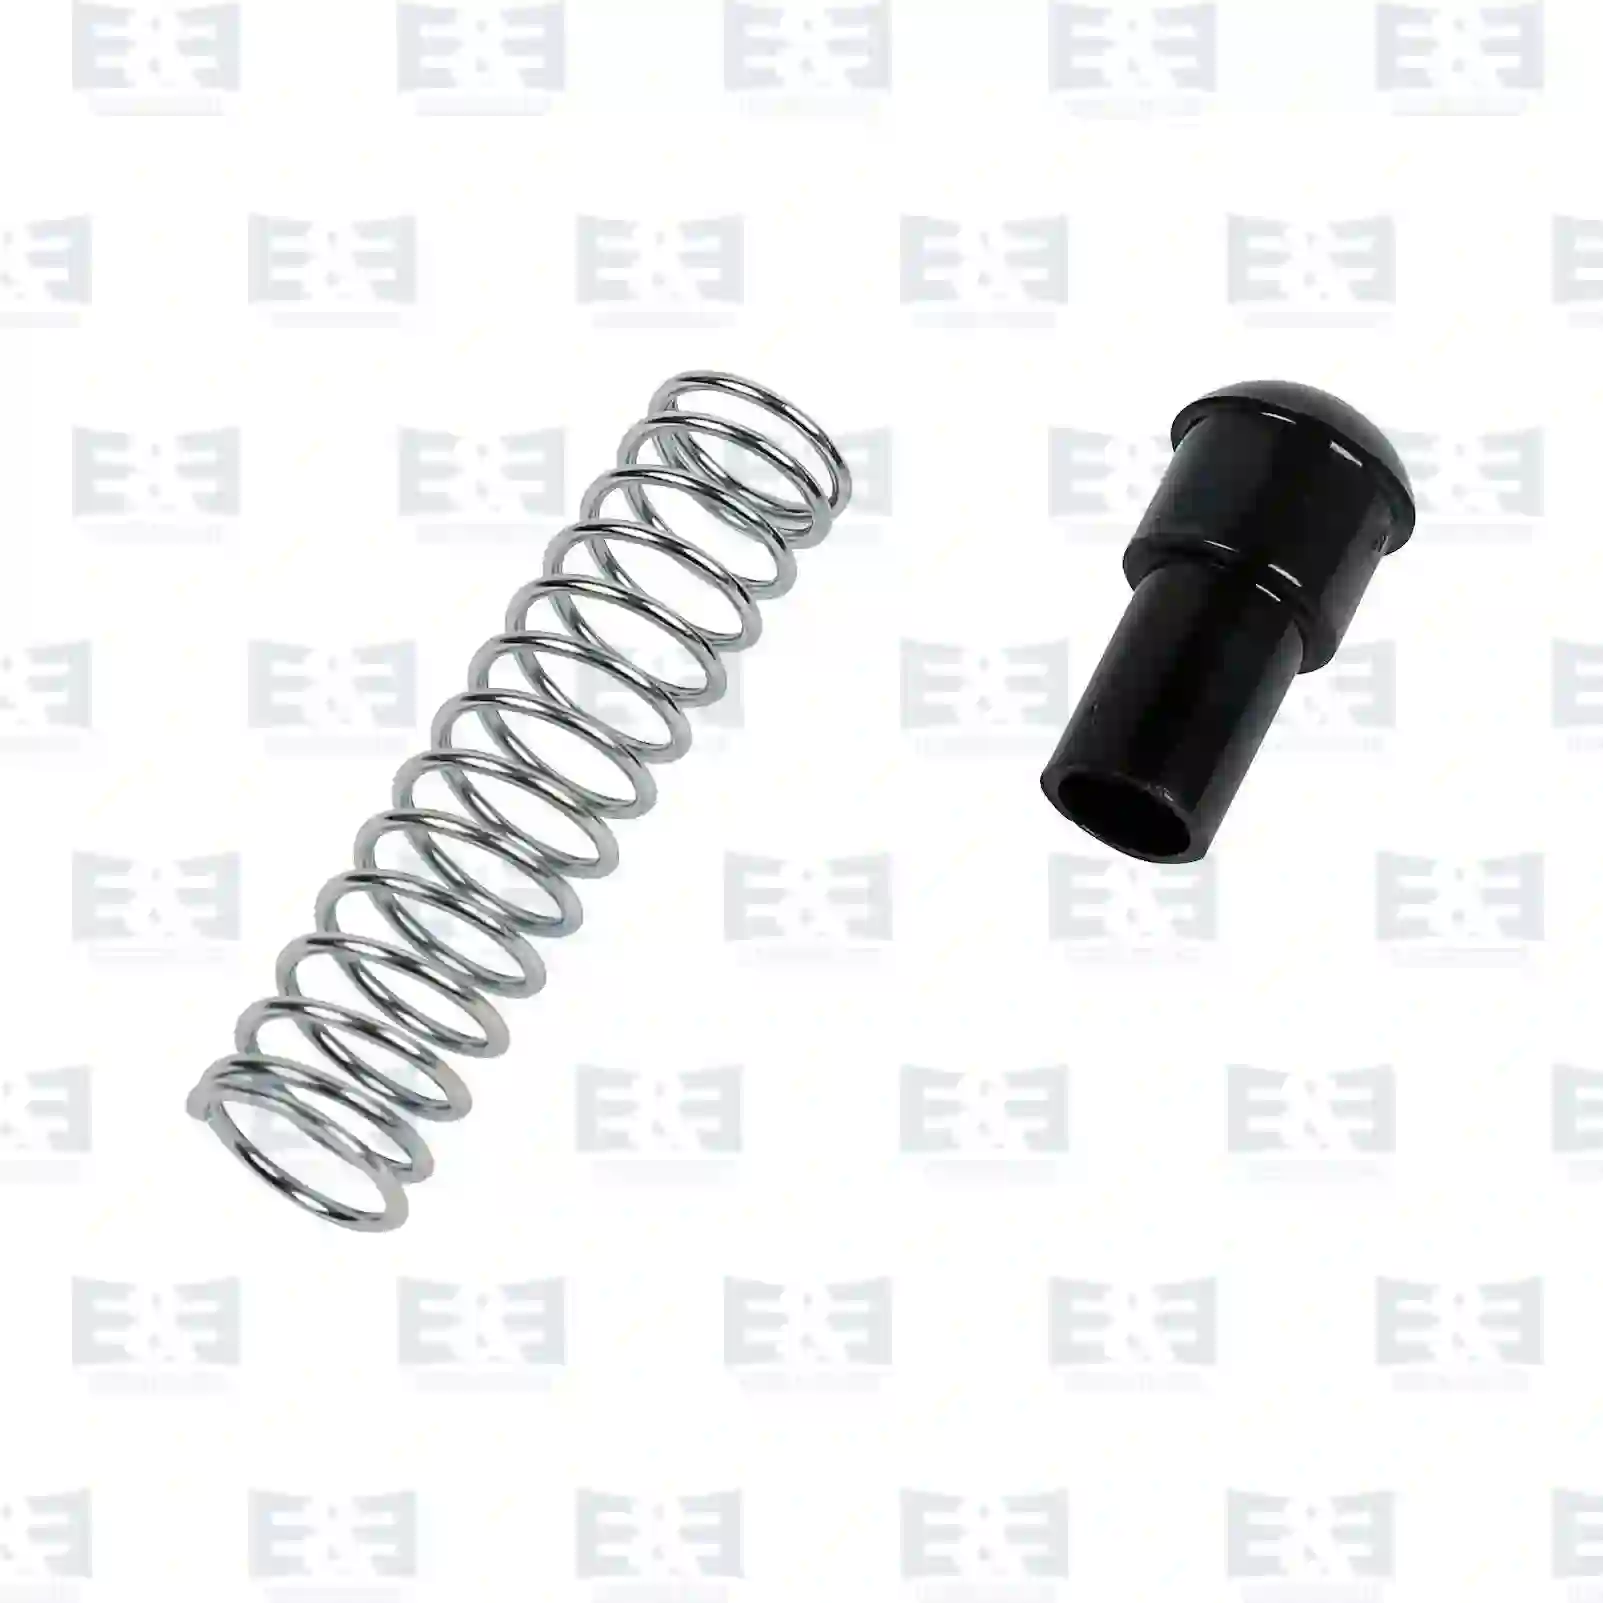  Repair kit || E&E Truck Spare Parts | Truck Spare Parts, Auotomotive Spare Parts